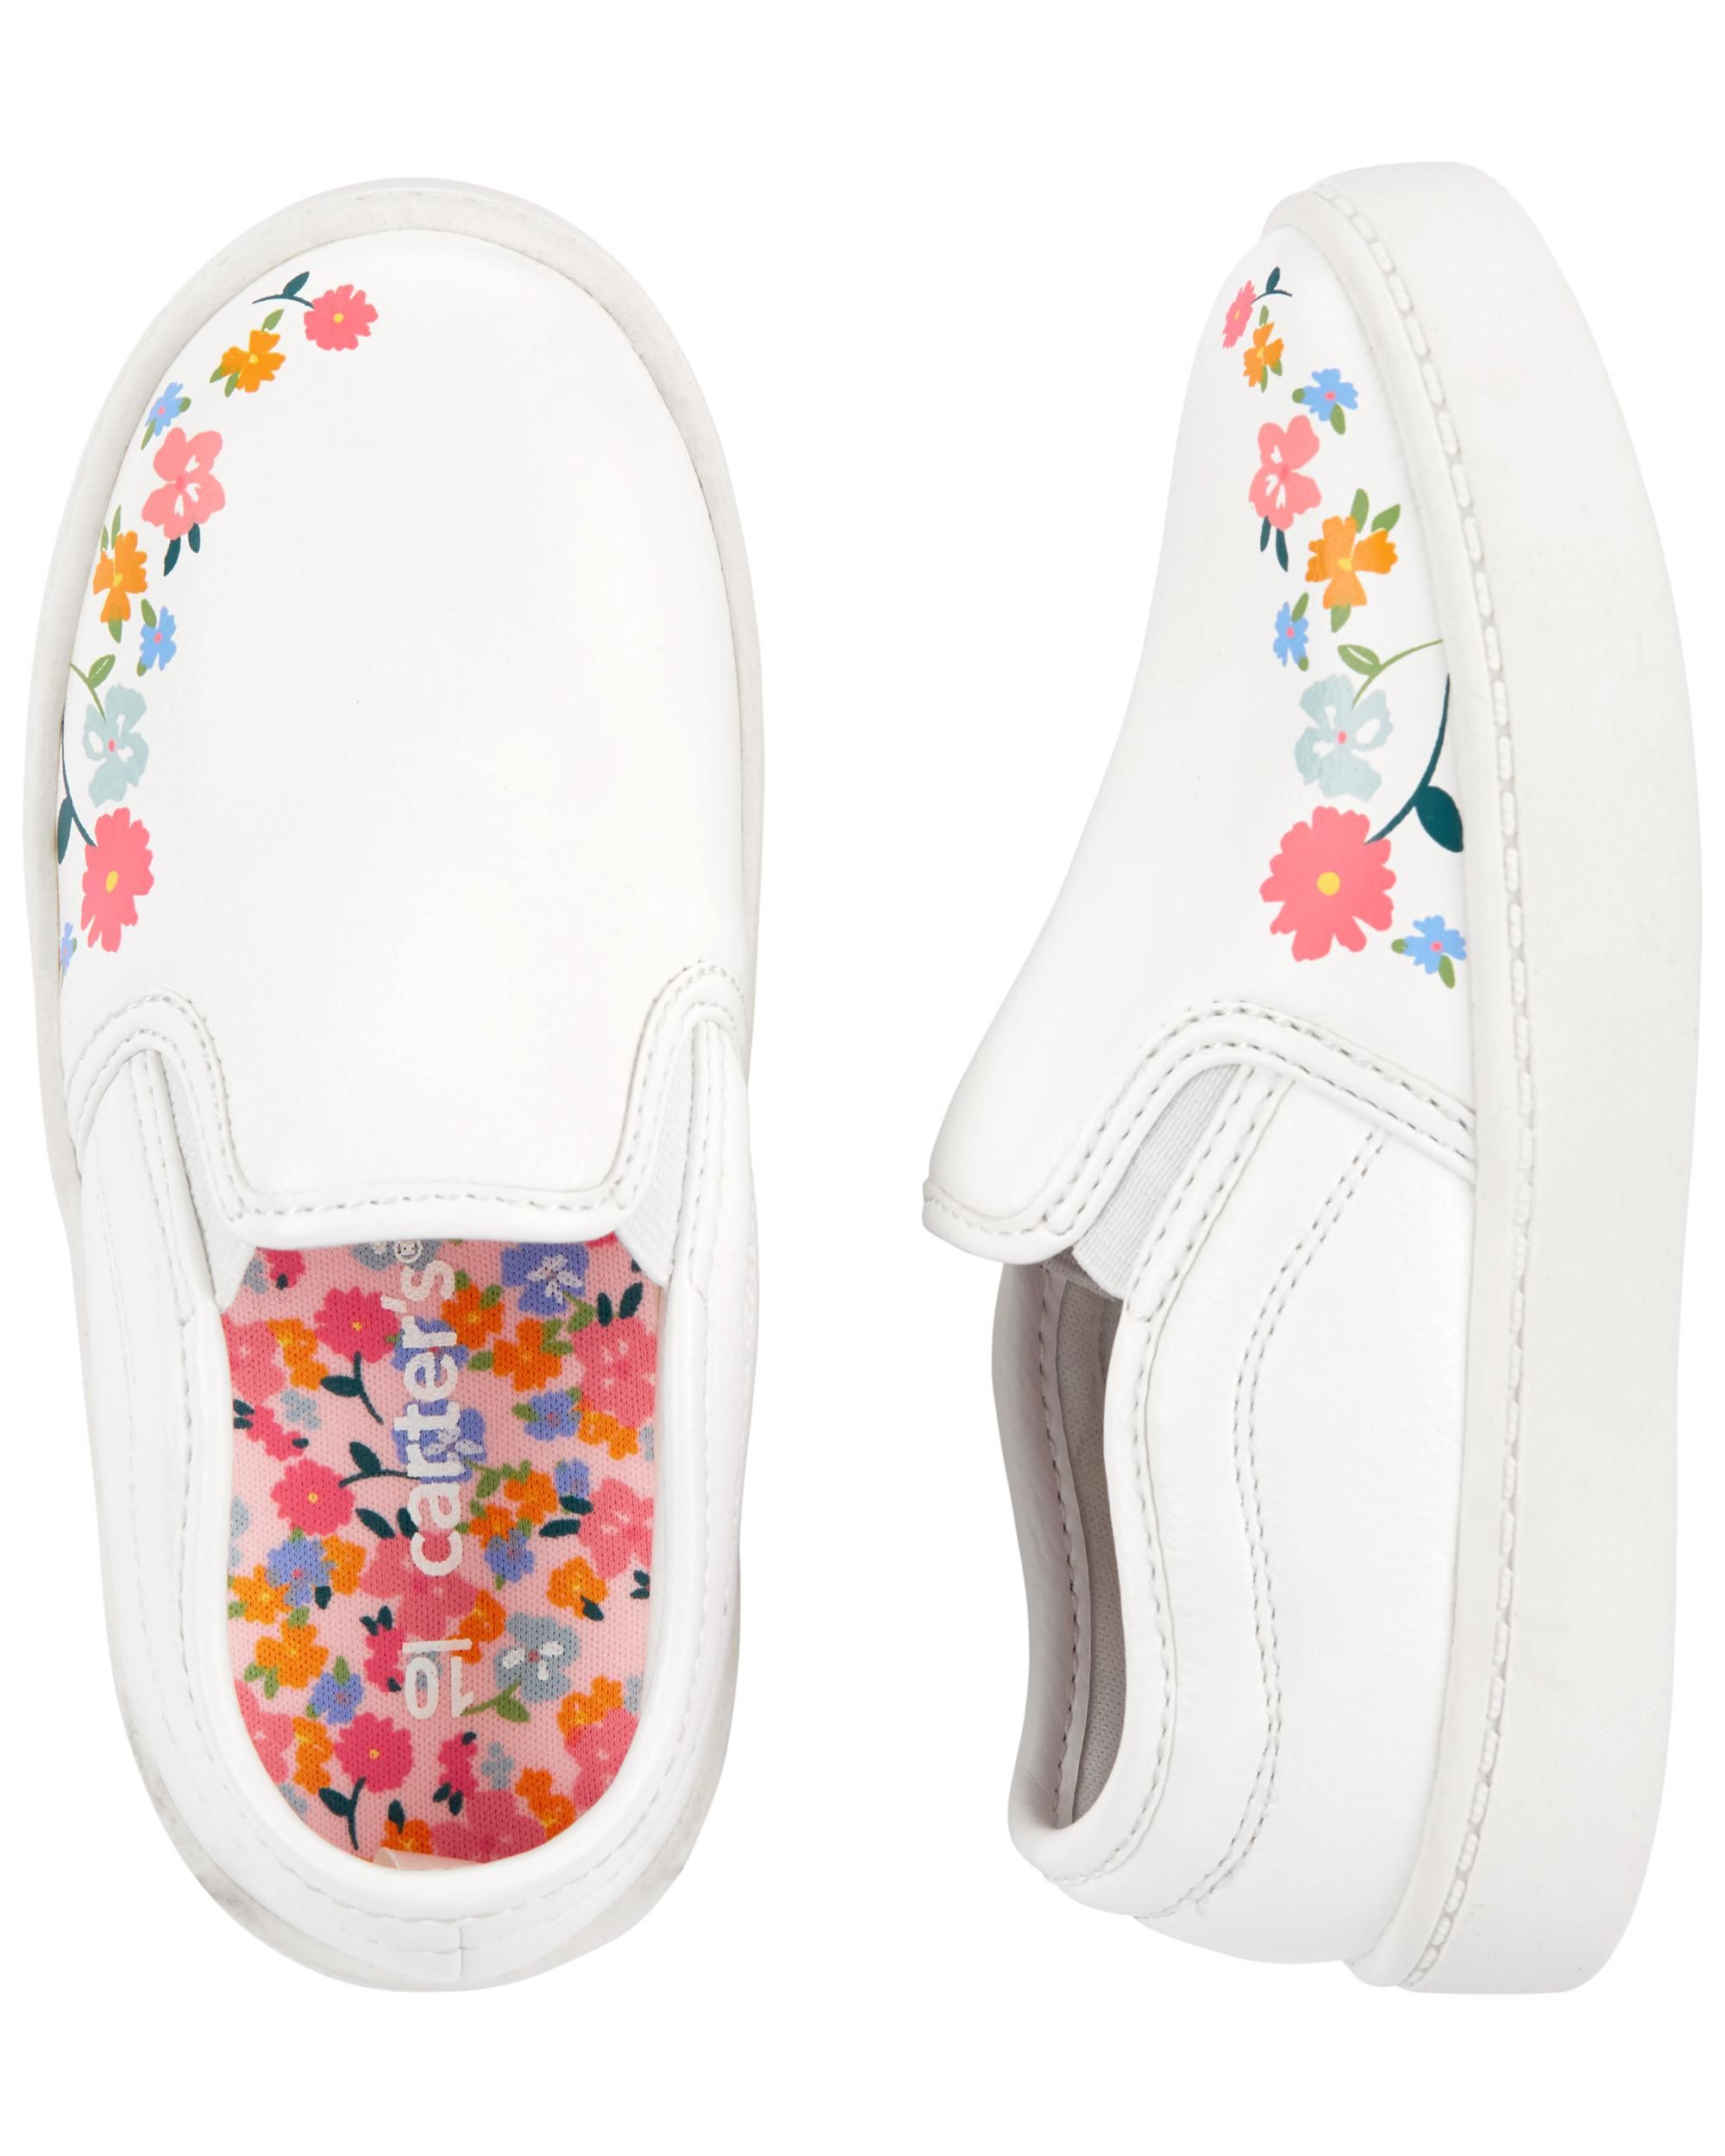 Carter's Floral Slip-On Shoes | Carter's